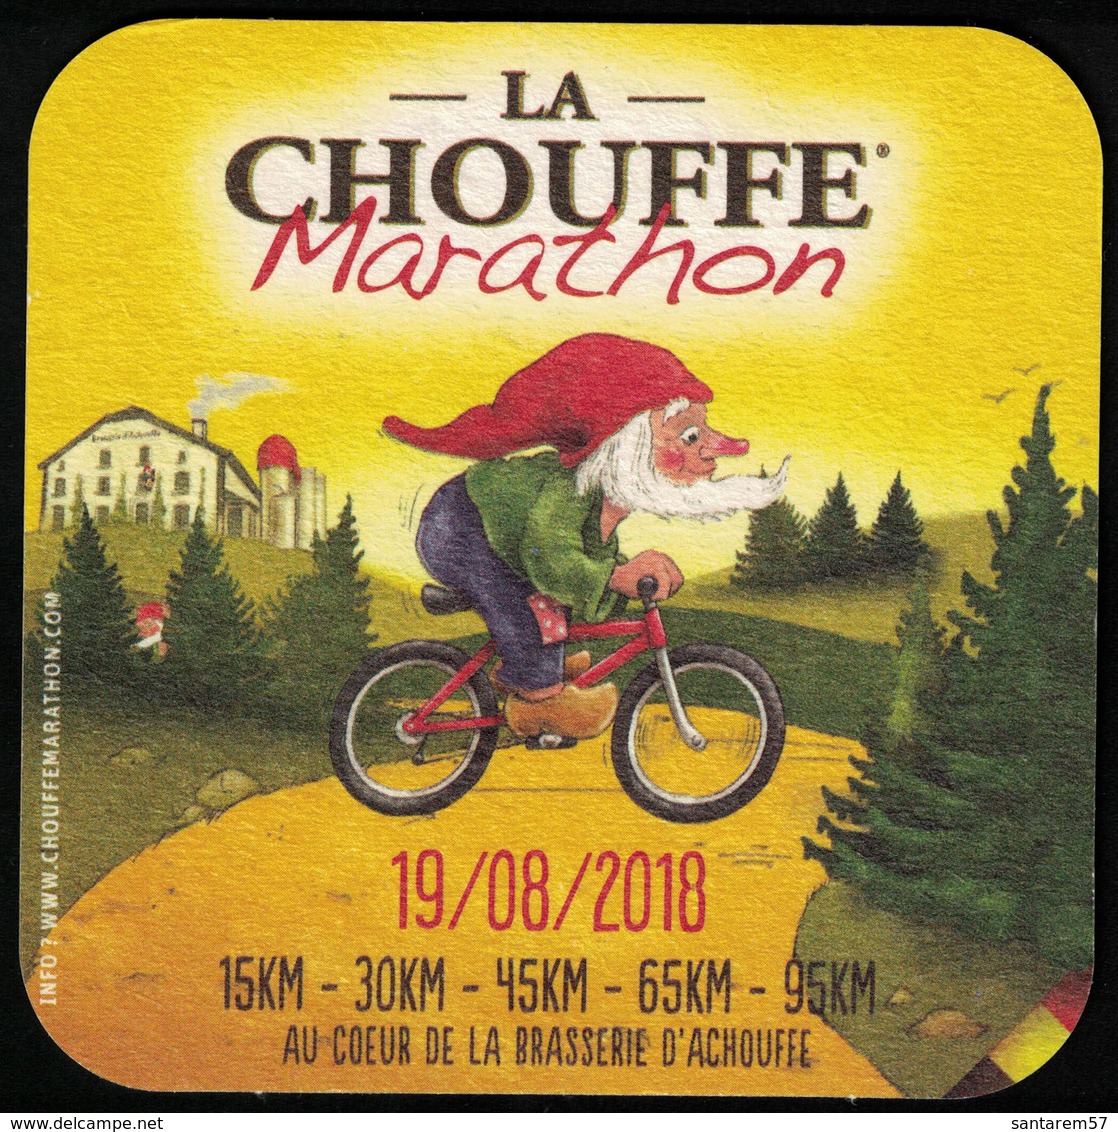 Belgique Sous Bock Beermat Coaster Bière Beer Chouffe Marathon Grande Choufferie 2018 - Bierdeckel